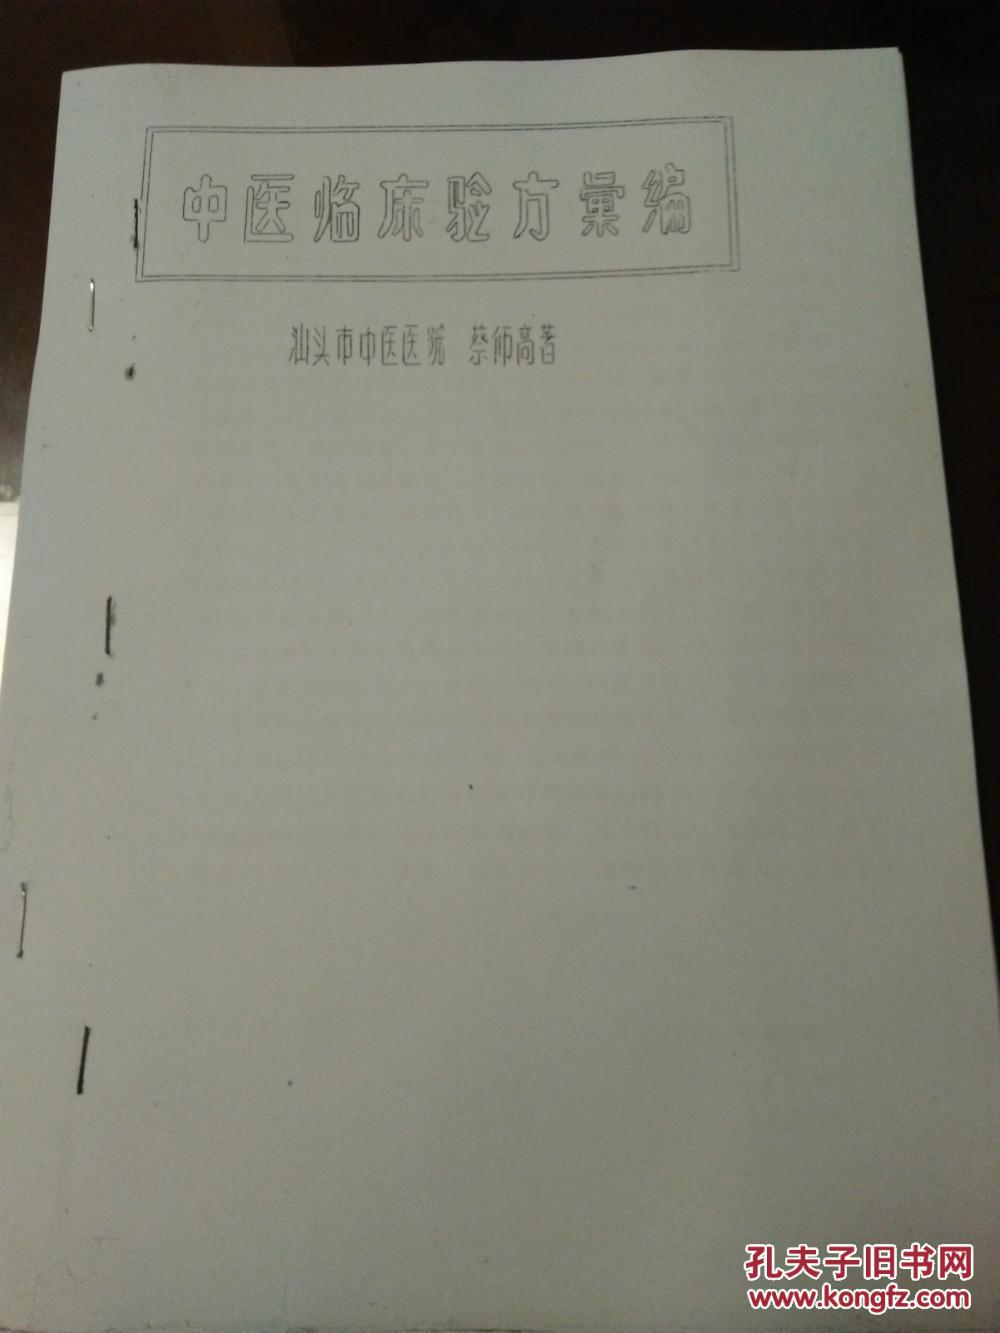 【图】仅售复印件:民国广东著名老中医蔡仰高